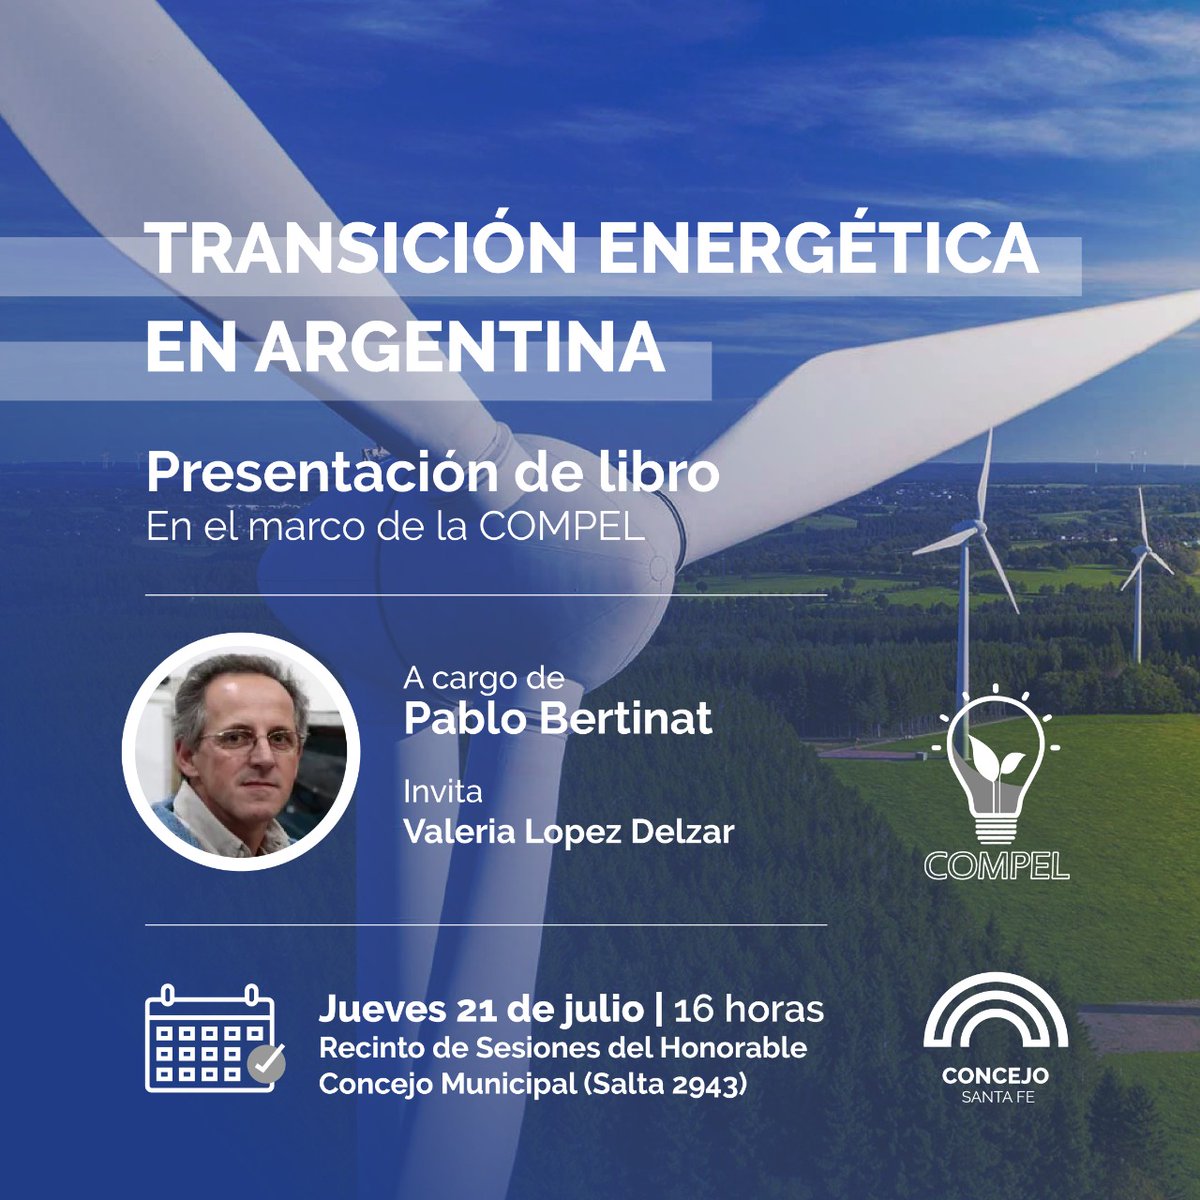 Presentación del libro “La transición energética en la Argentina” en Santa Fe: jueves 21 de julio 16 hs.